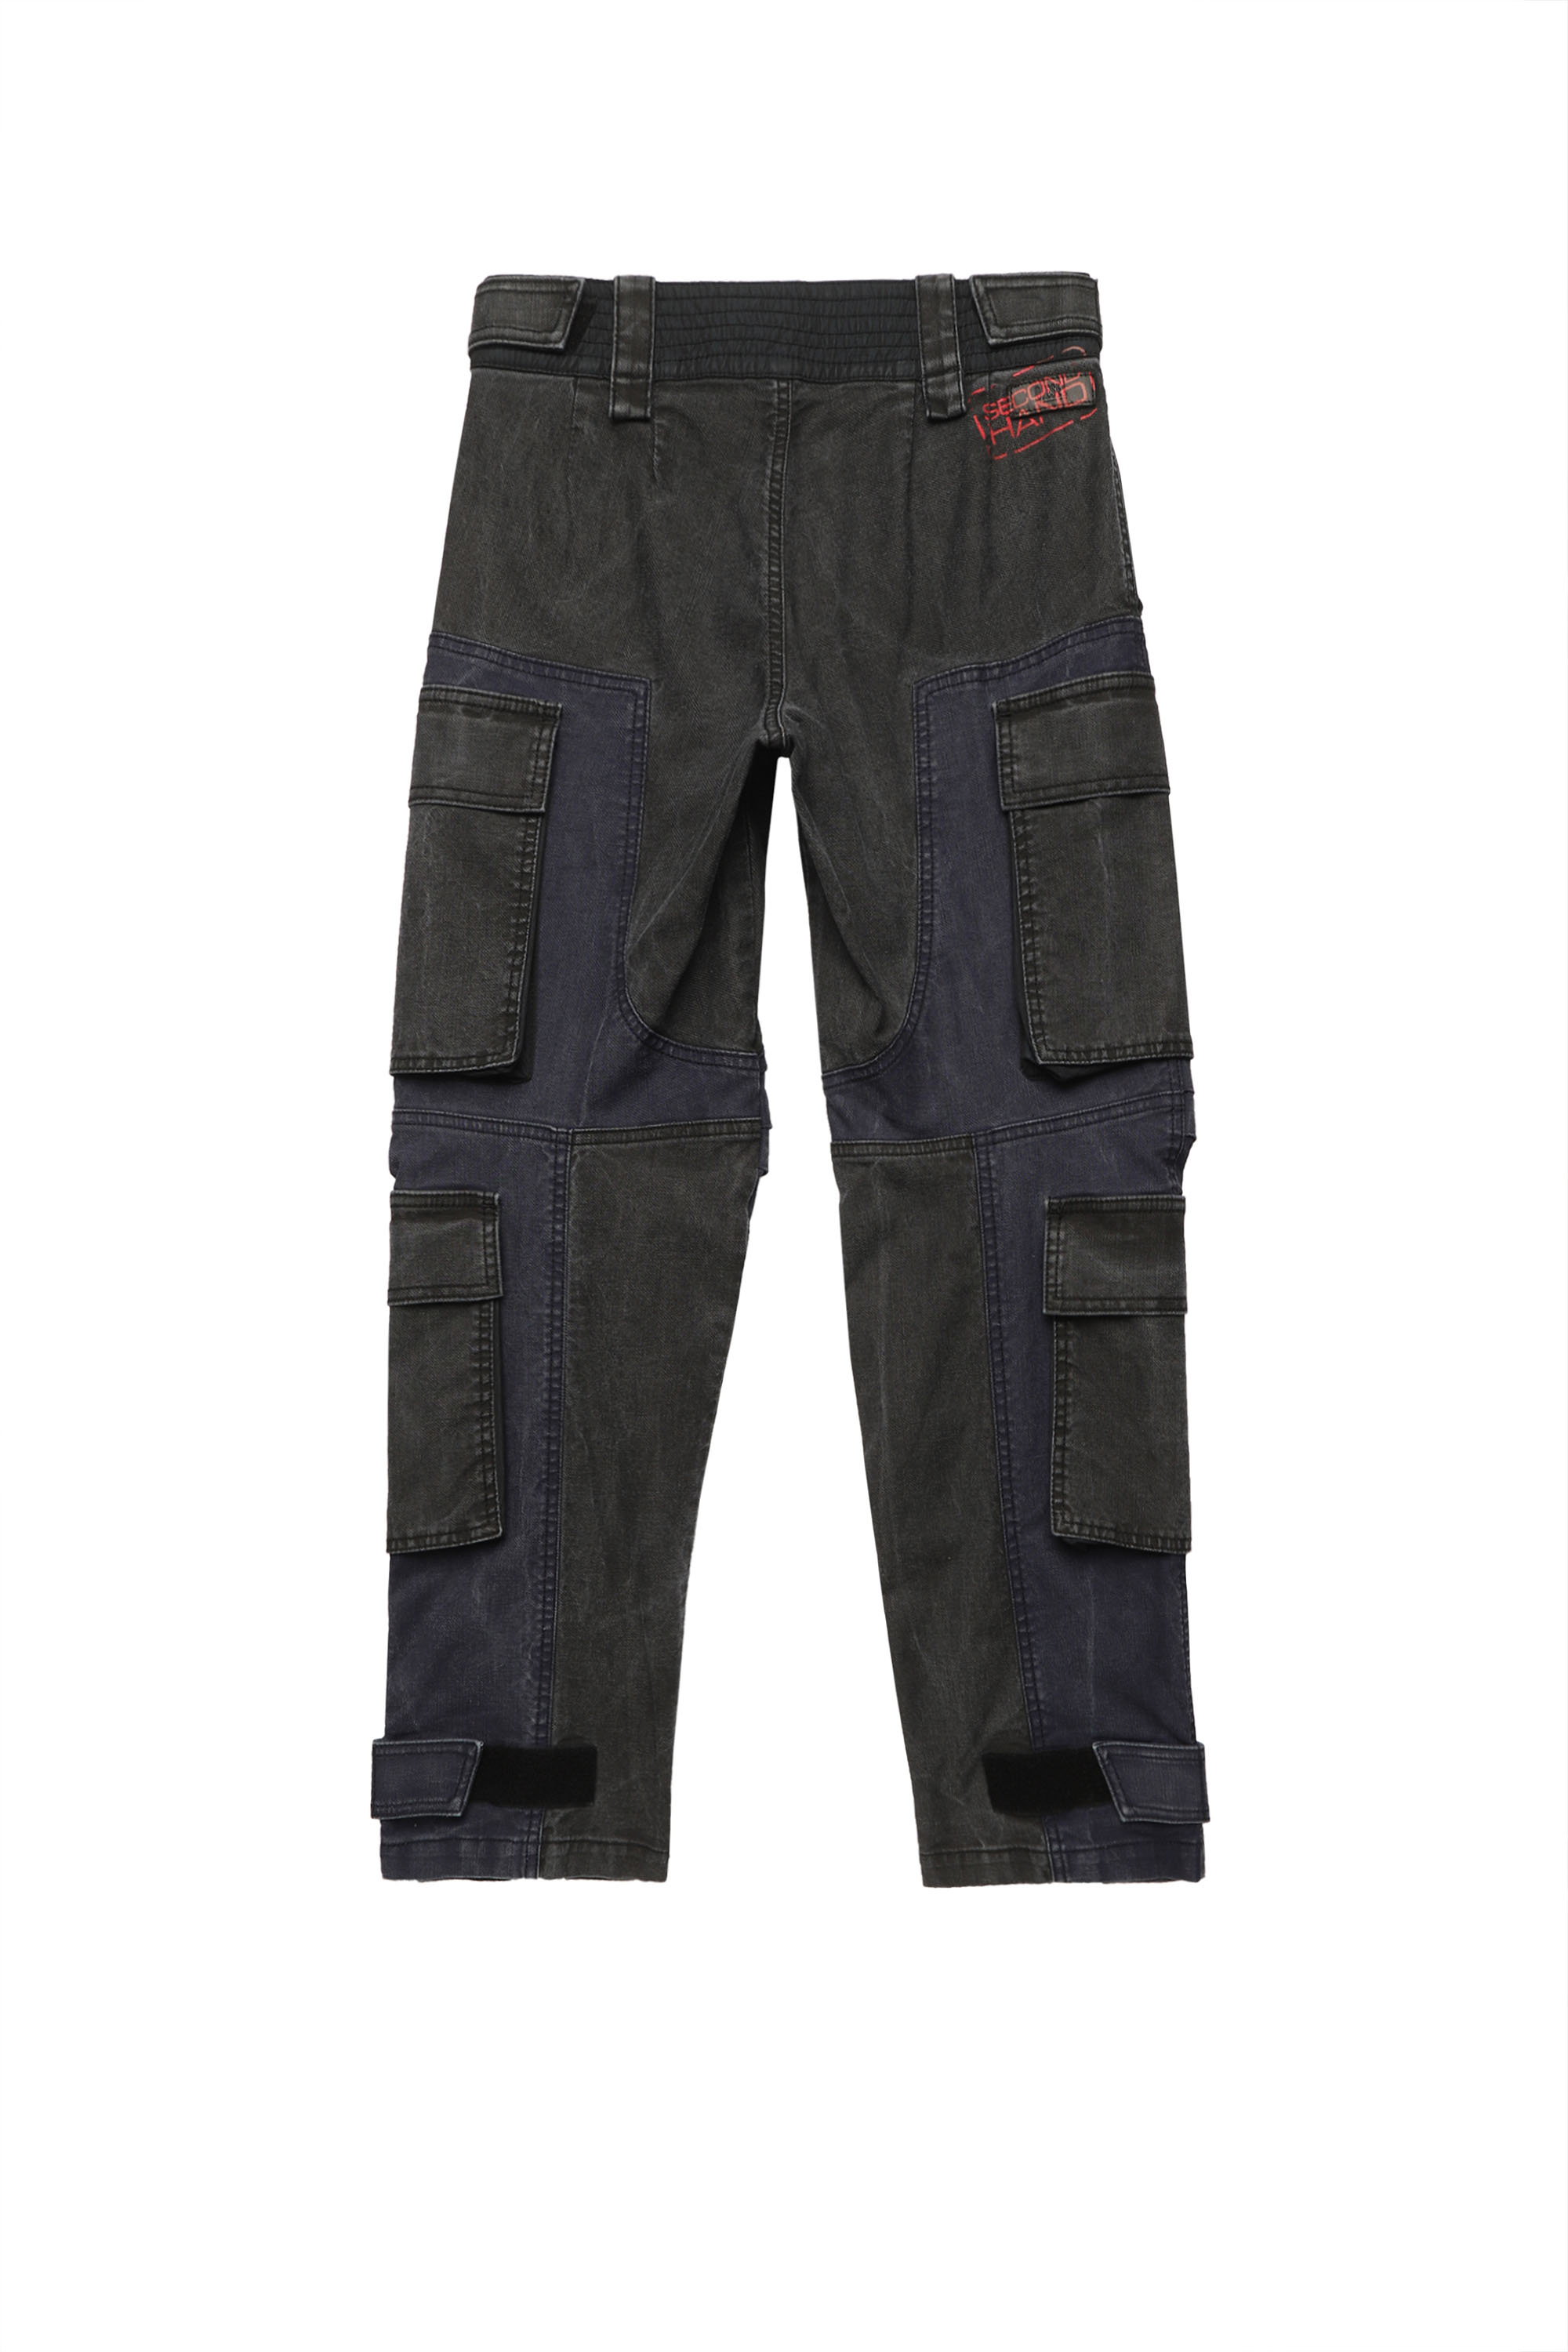 Diesel - D-KYKI-SP JoggJeans®, Black/Dark grey - Image 2